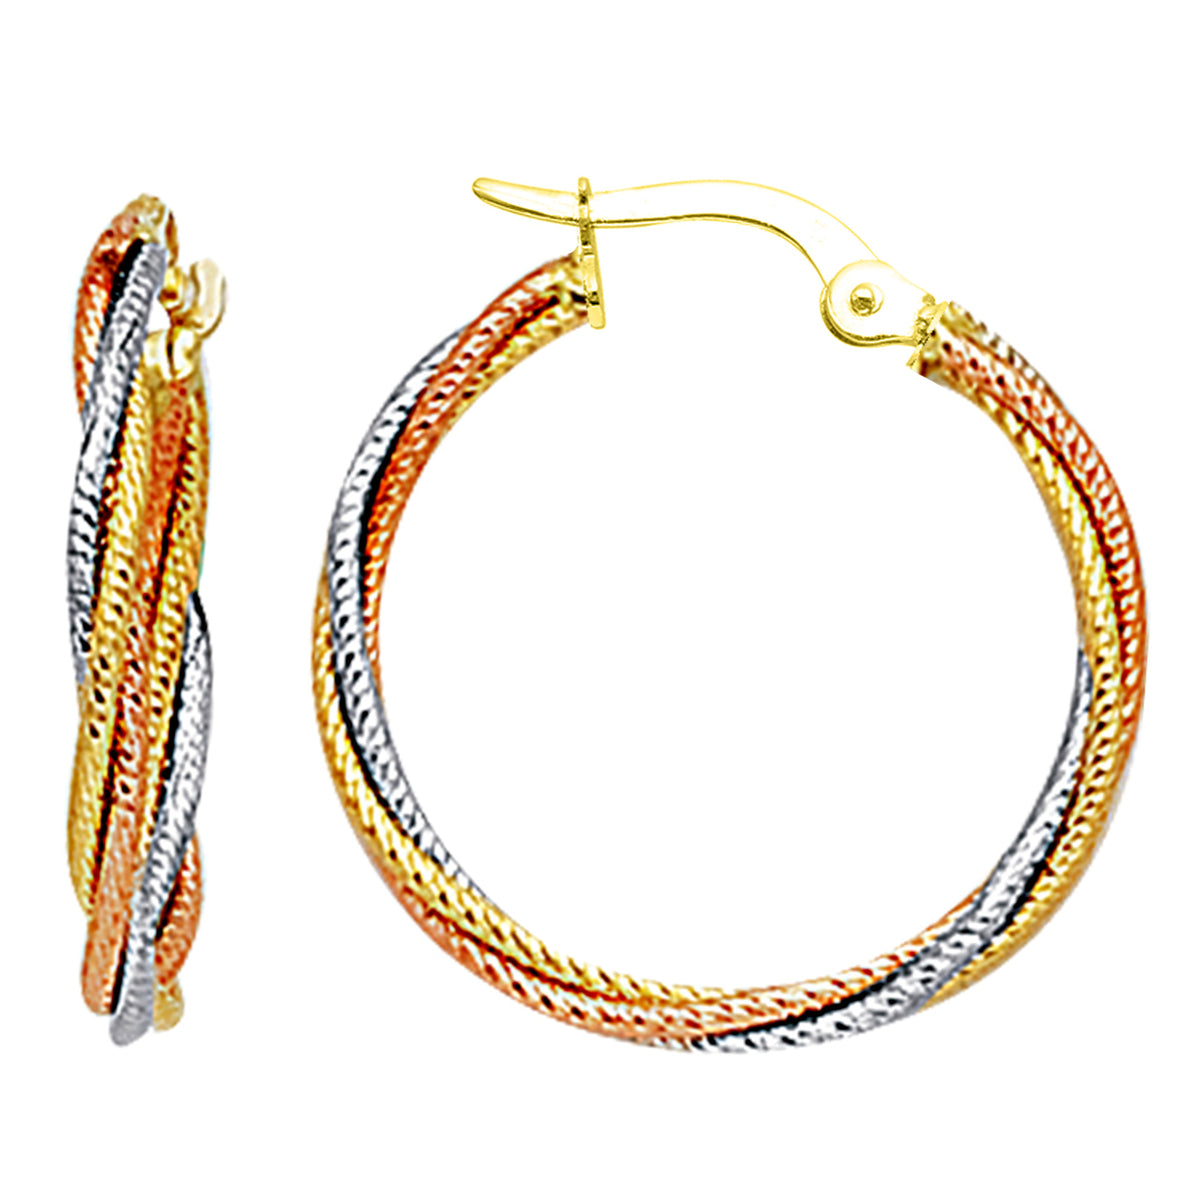 10k 3 tone hvid, gul og rosa guld tredobbelt flettet kabler runde bøjle øreringe, diameter 23 mm fine designer smykker til mænd og kvinder